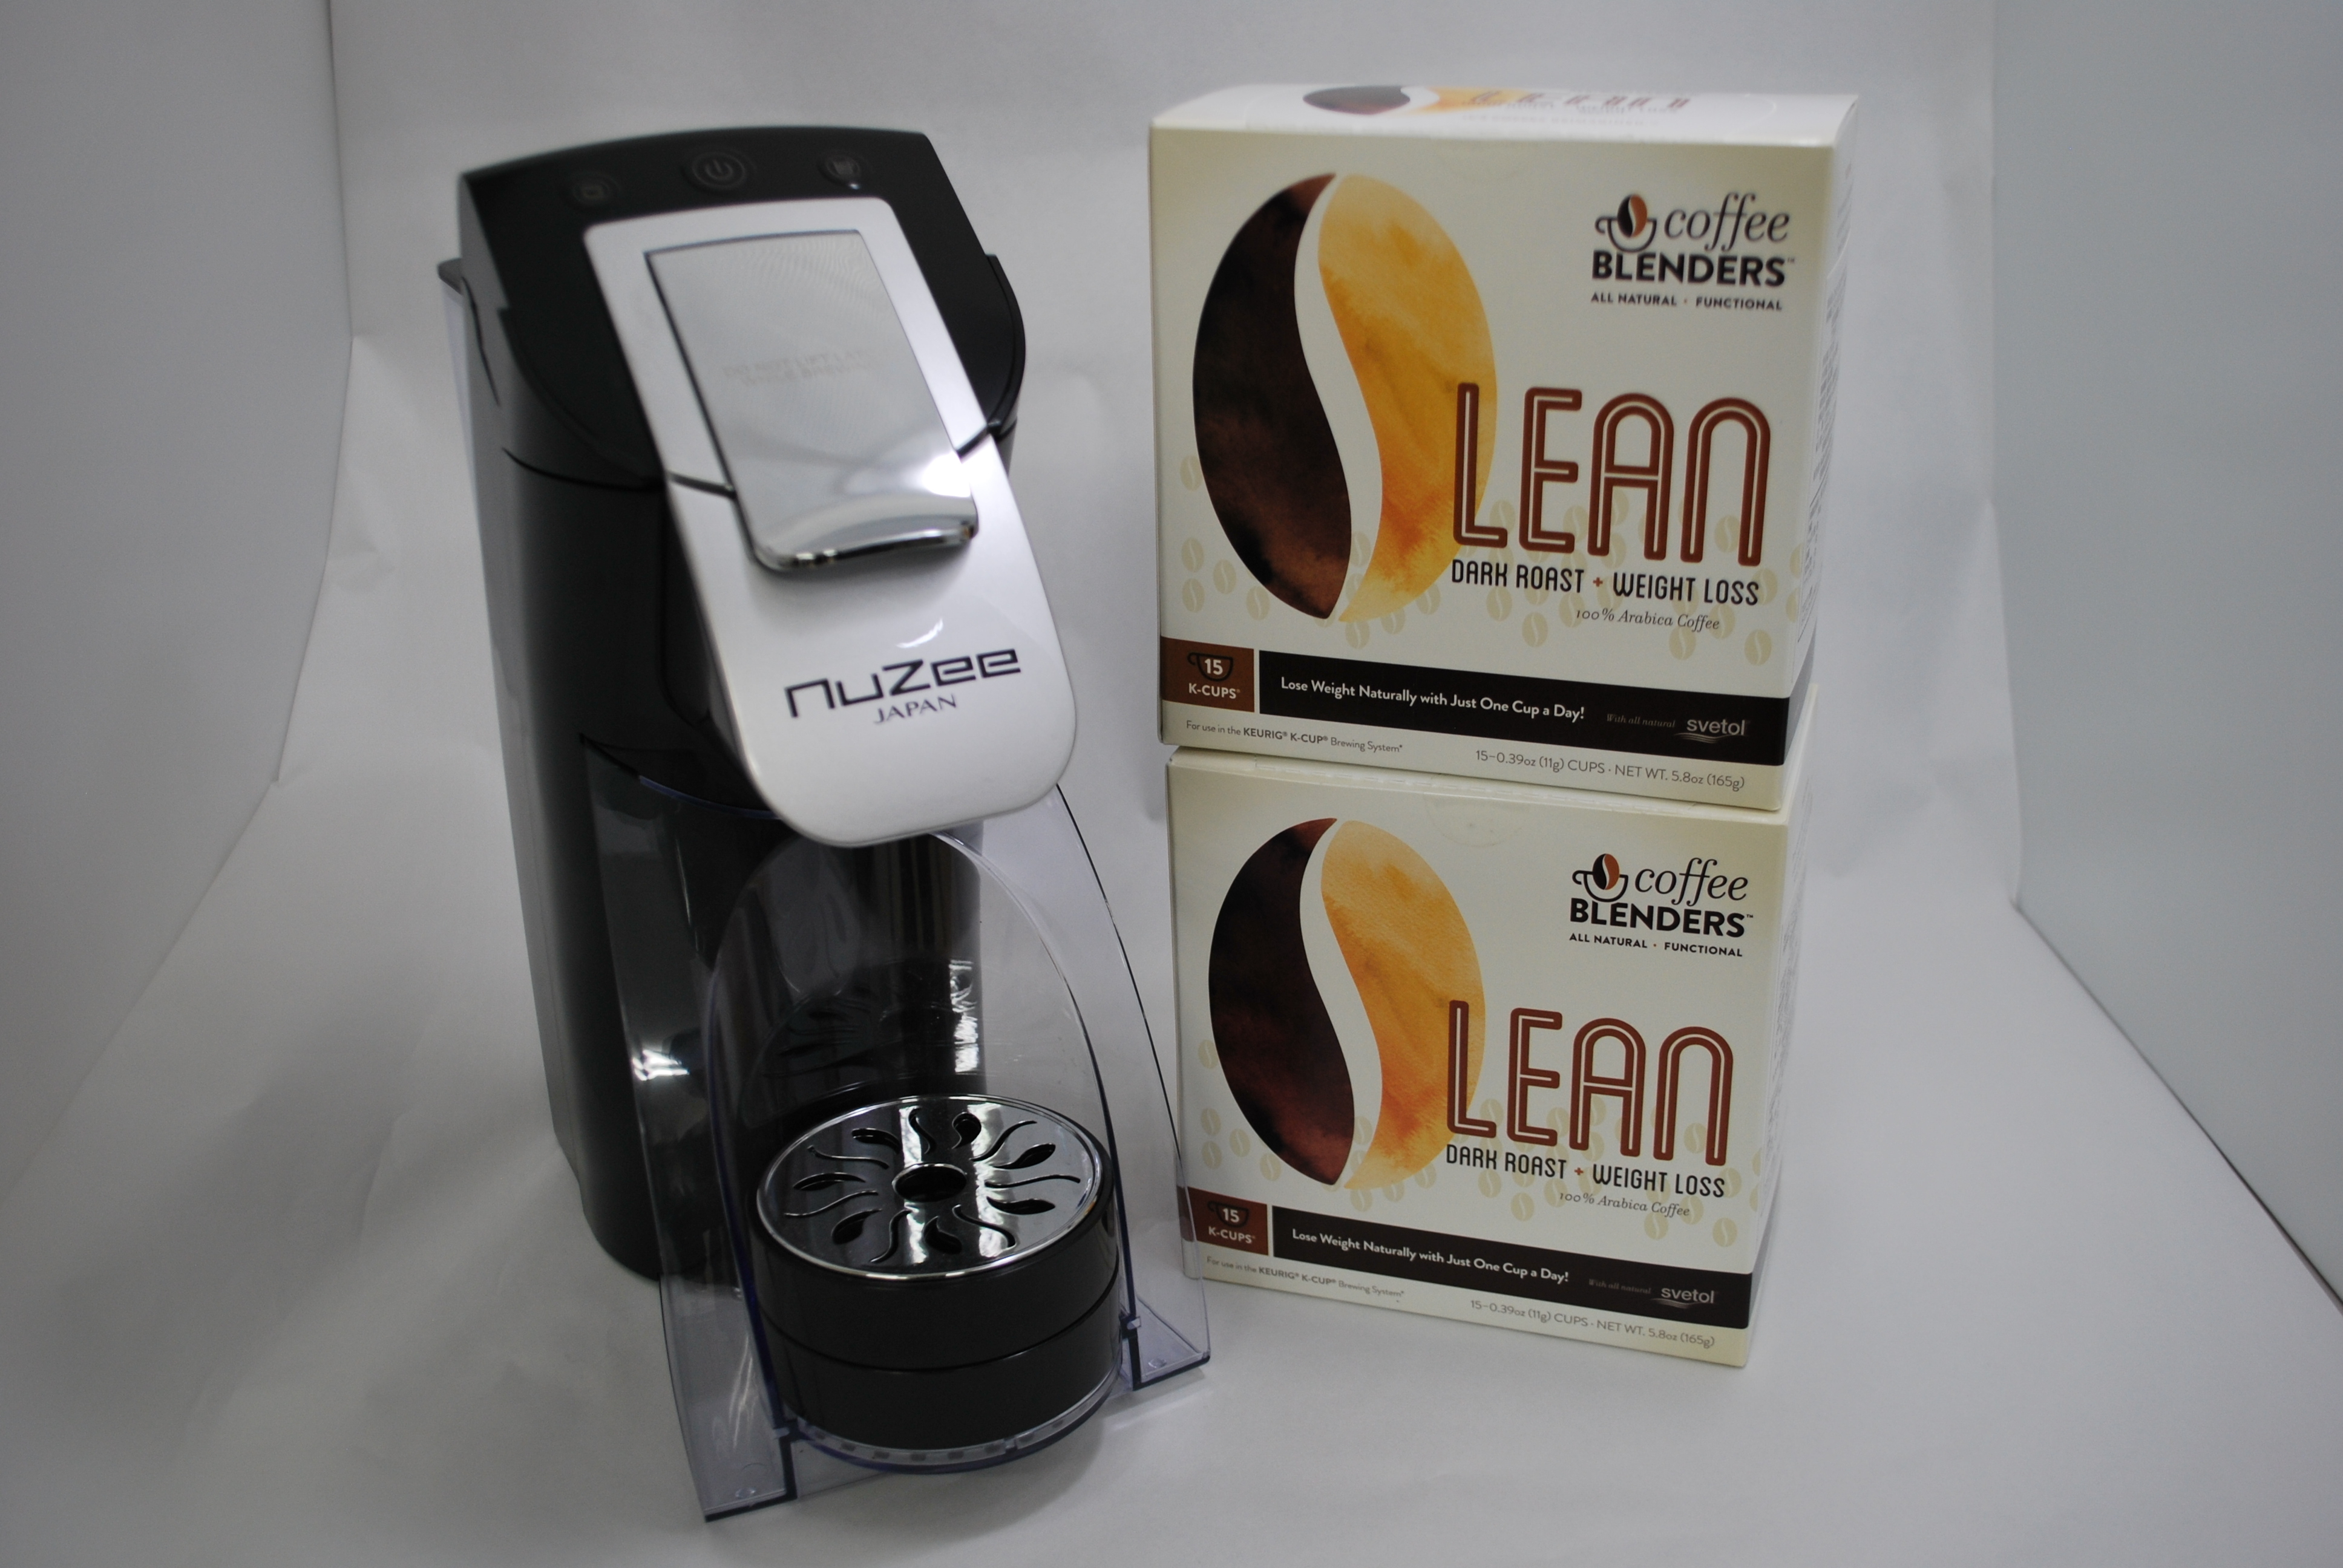 世界最速！スイッチオンから約5秒で抽出可能なコーヒーメーカー「K-DRIP COFFEE BLENDER」2月3日より発売  ～軽量コンパクトなボディで持ち運びも簡単～｜NuZee JAPAN株式会社のプレスリリース